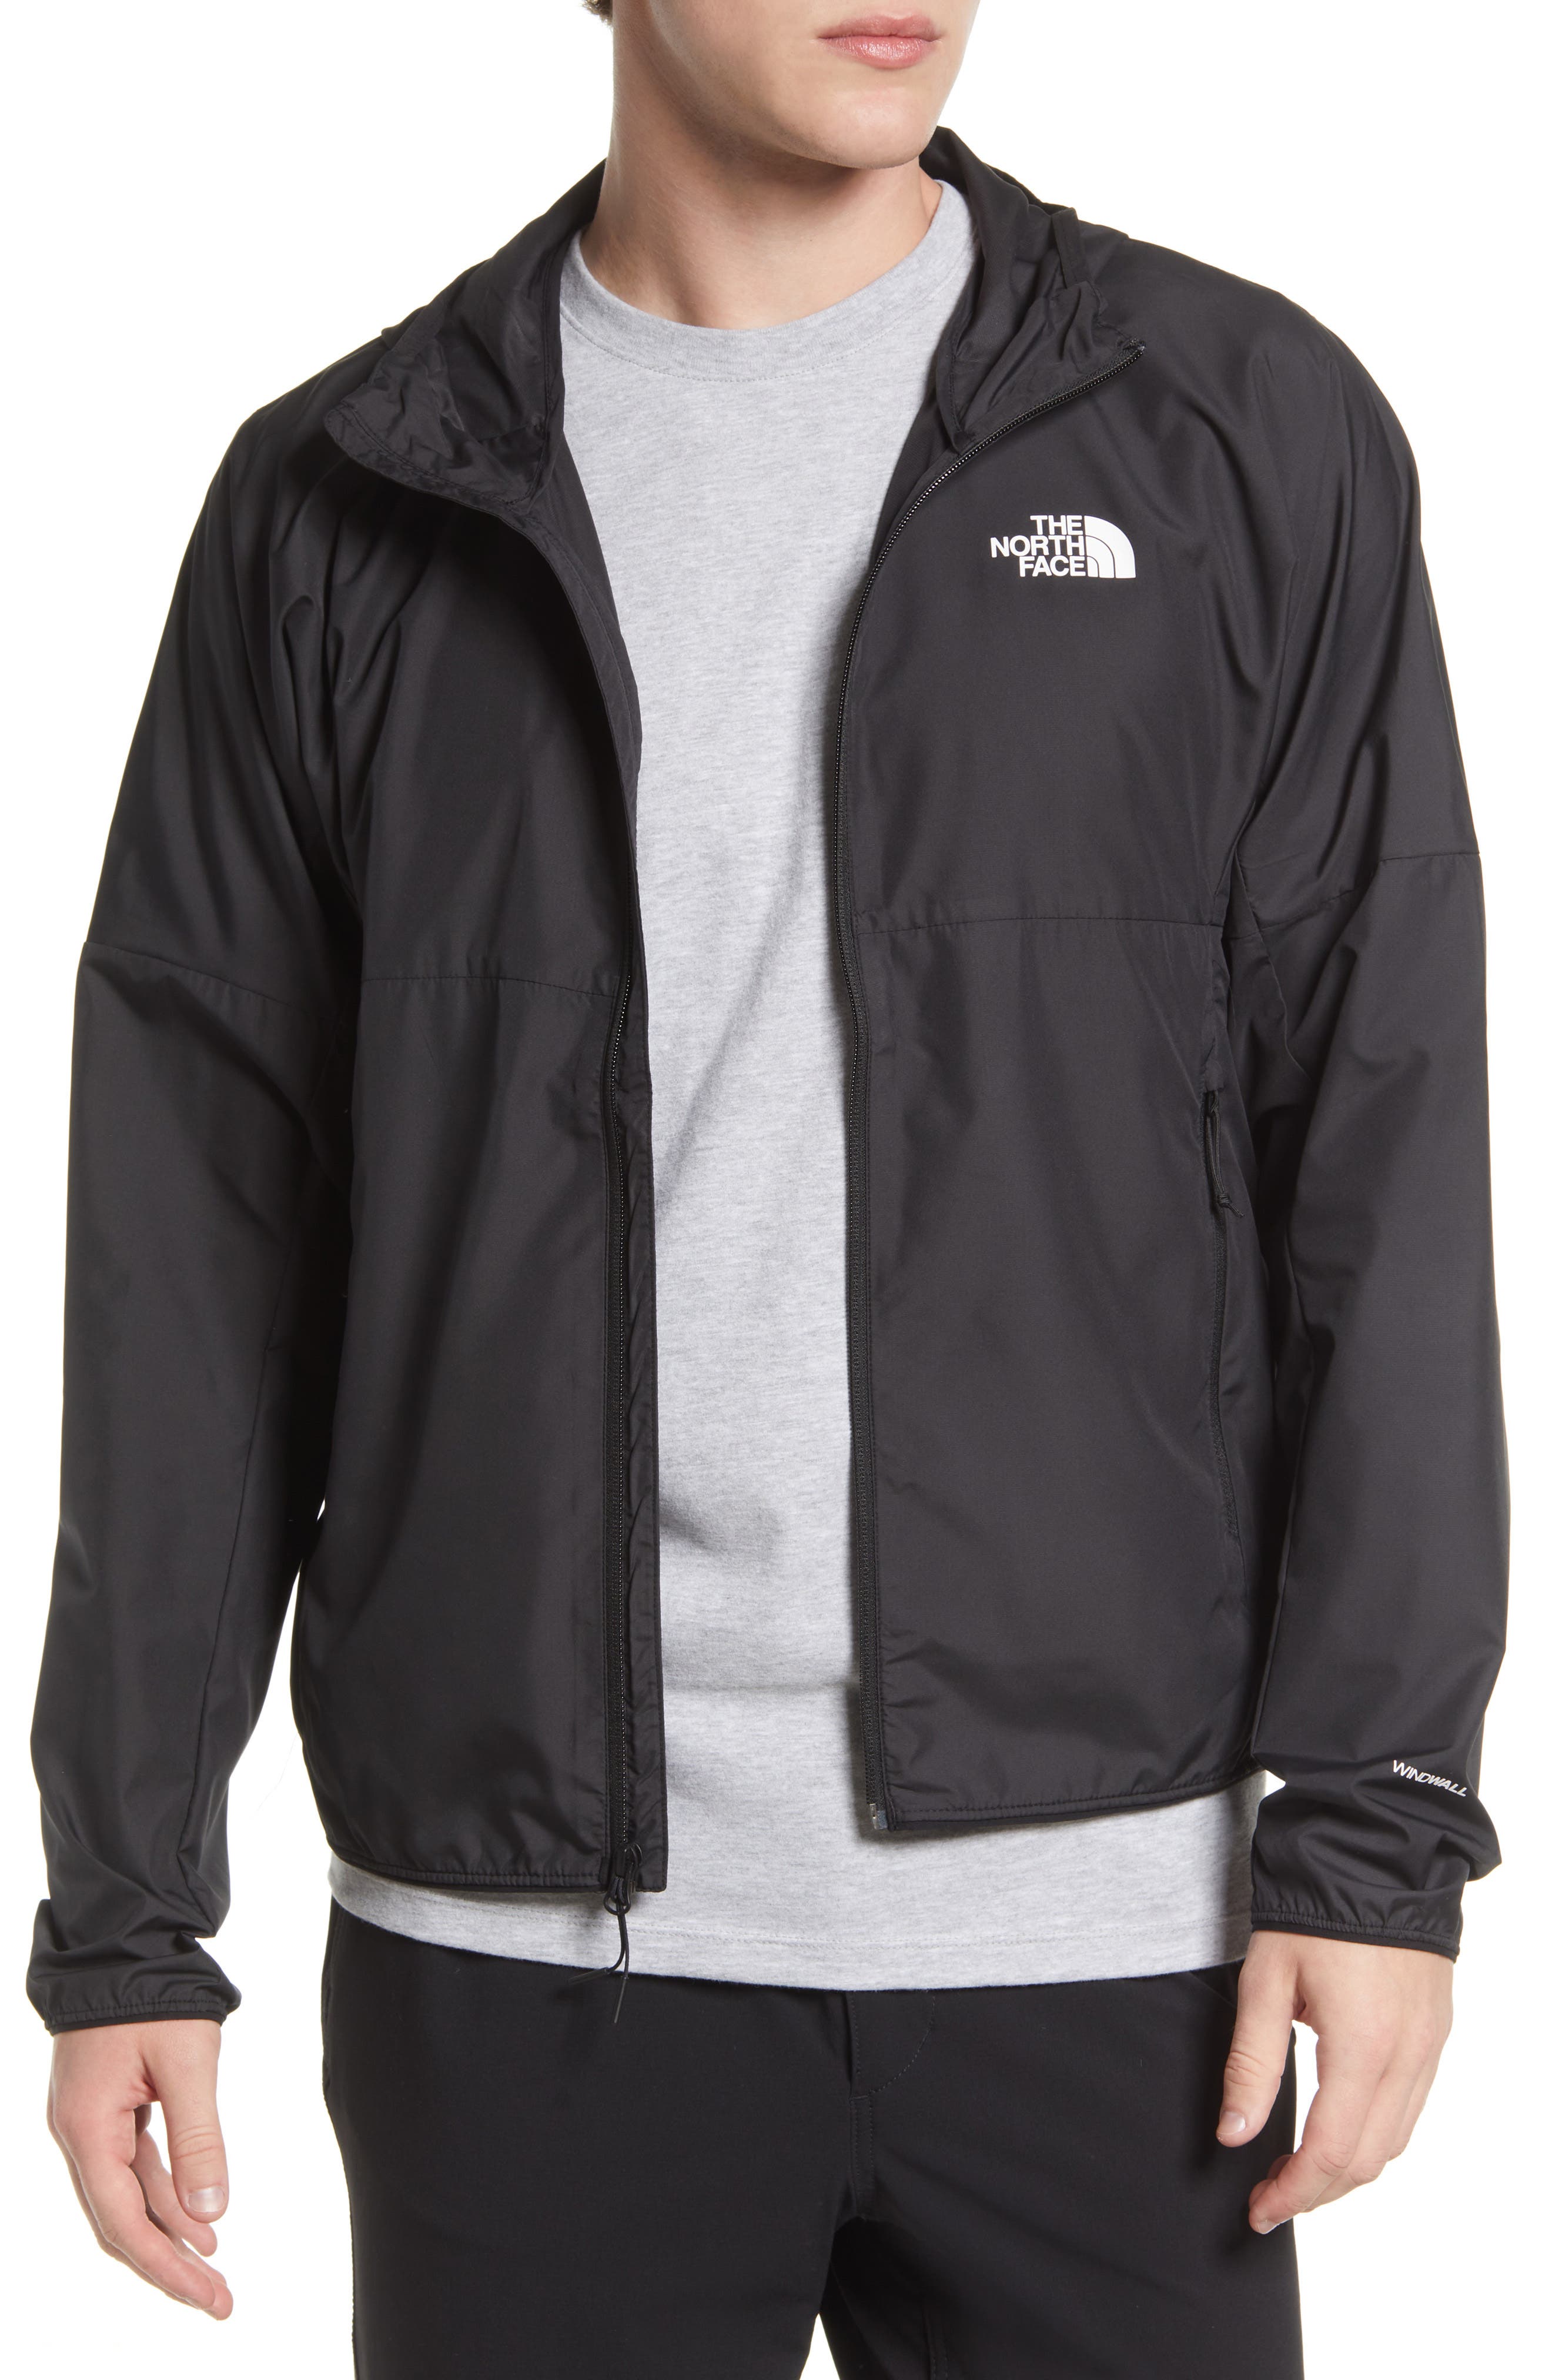 Tops Waterproof Windbreaker ZIPPER Jacket Men's Hoodie Light Sports Outwear Coat